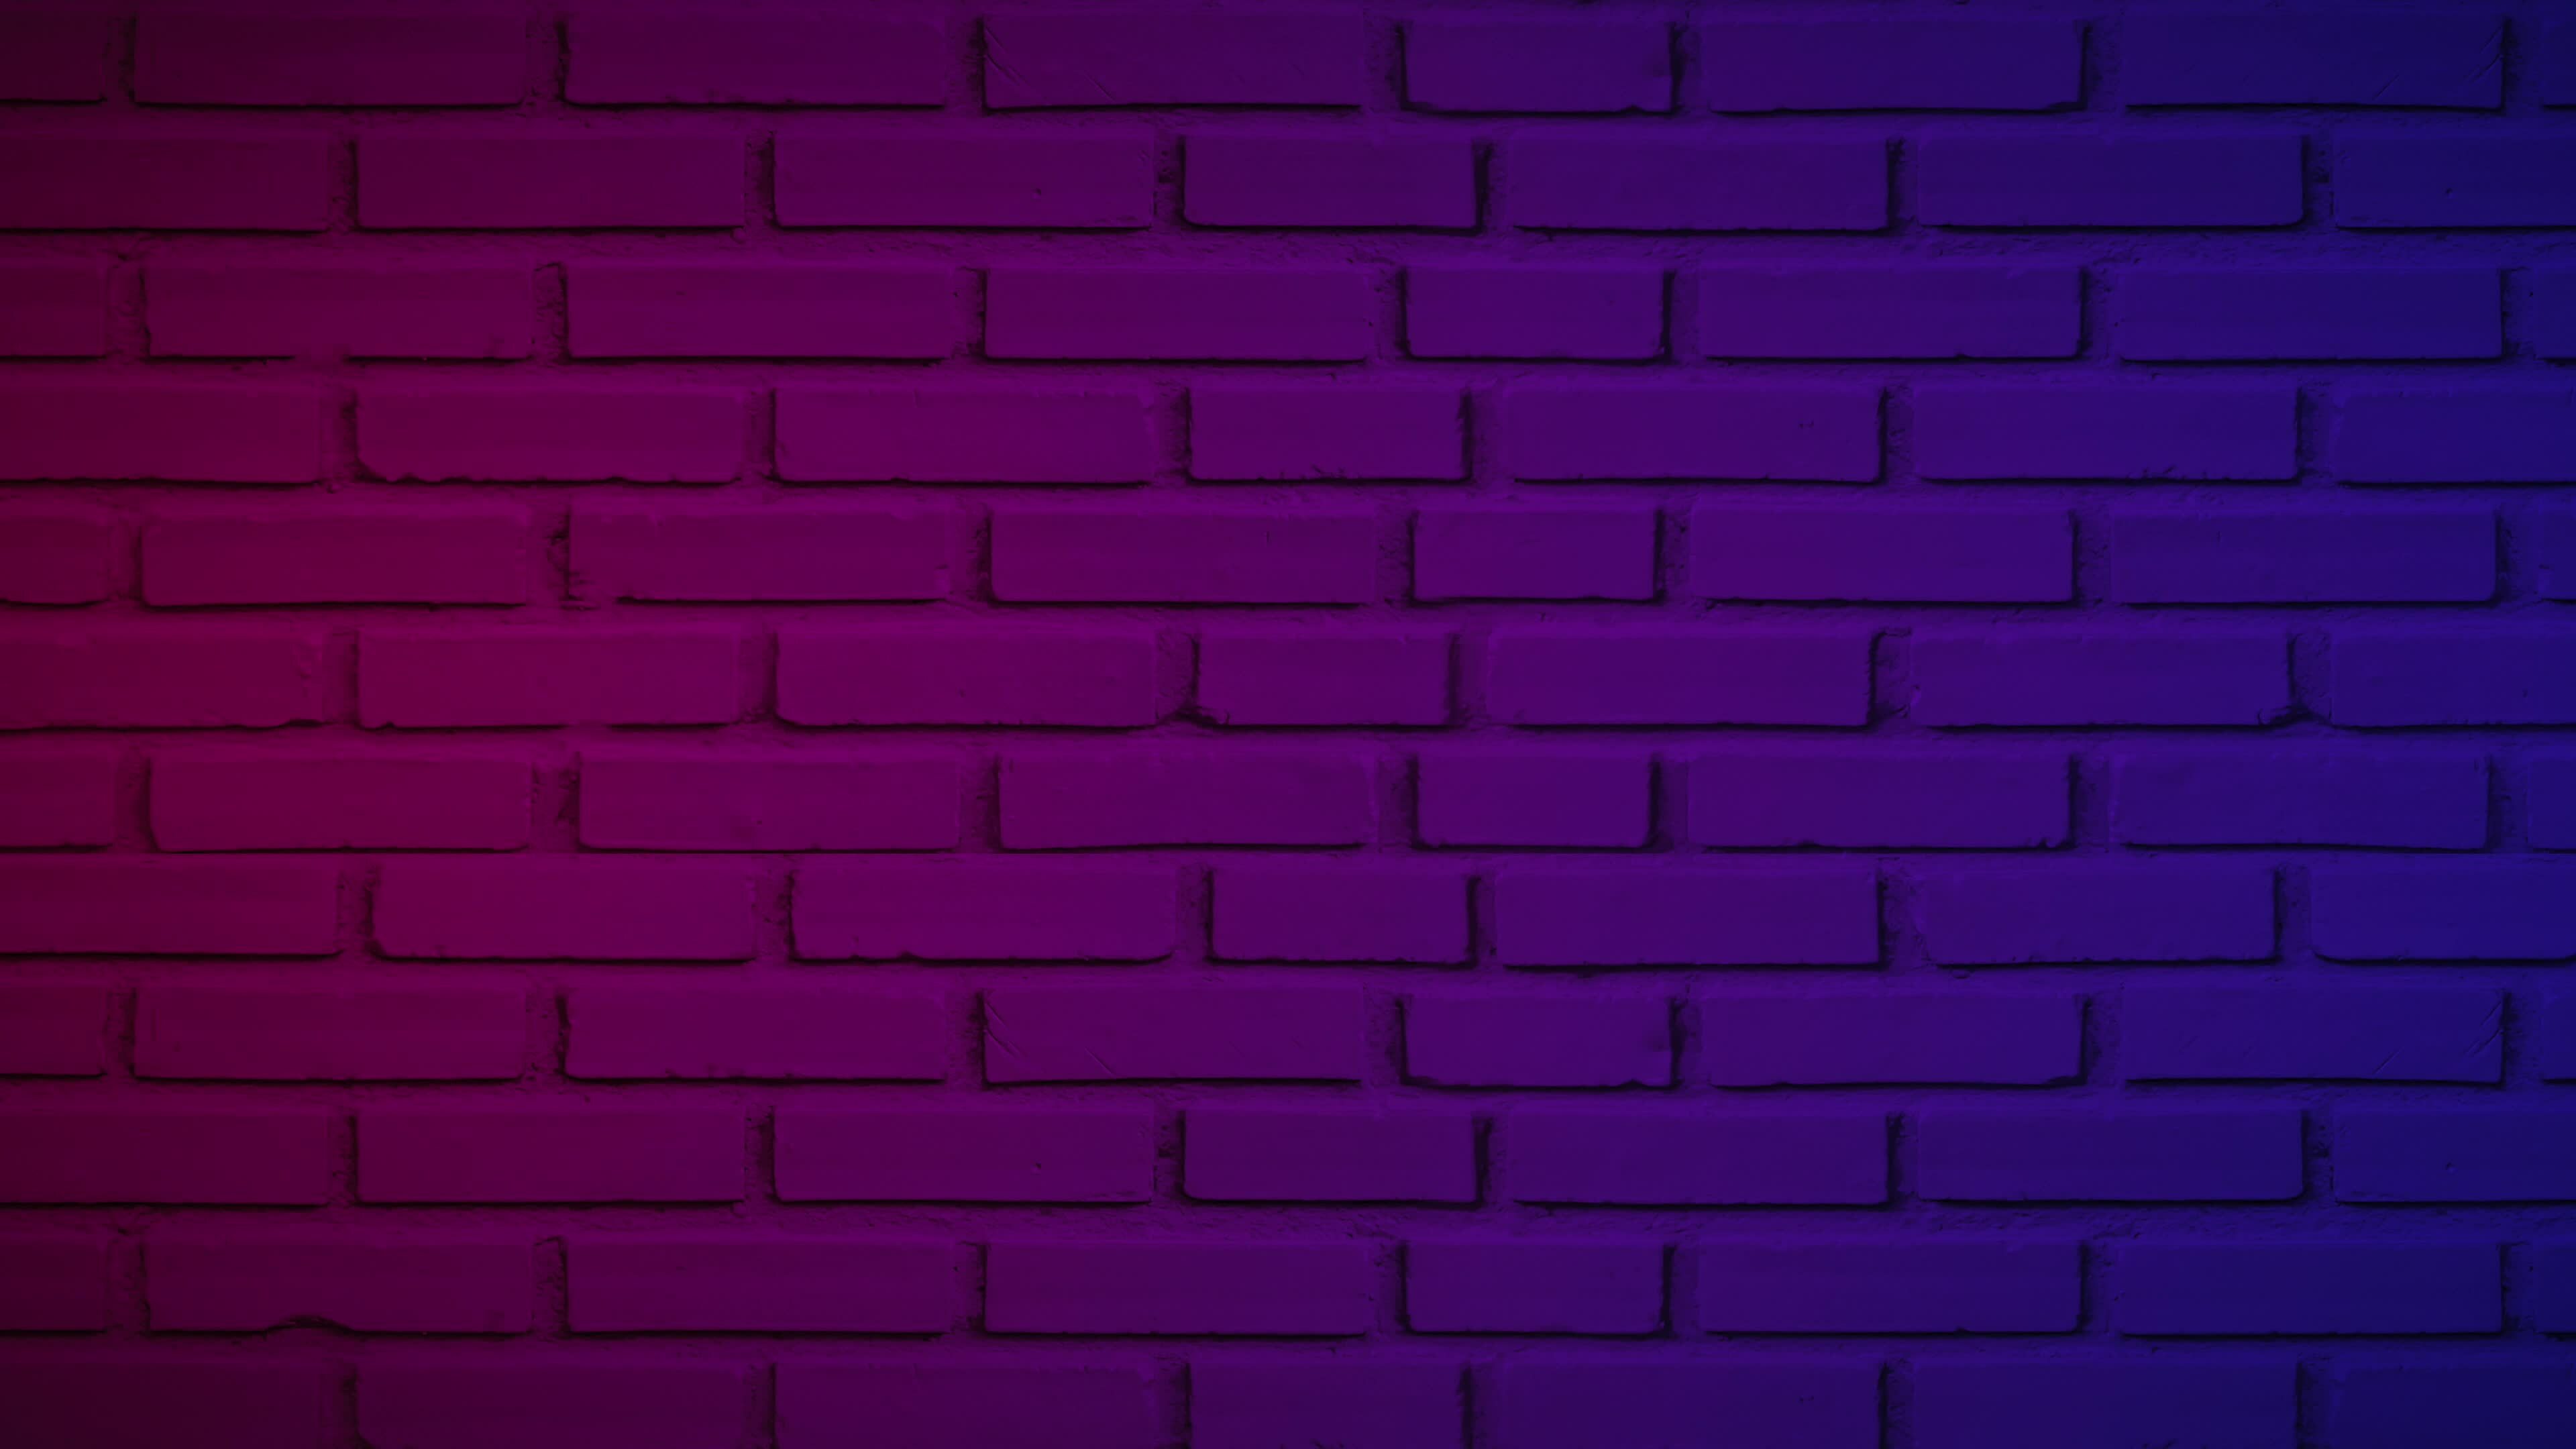 Có một hình ảnh nền tường gạch màu tím tuyệt đẹp có thể được tải xuống miễn phí để sử dụng trong các thiết kế nội thất của bạn. Mẫu nền này sẽ mang đến một sự lựa chọn tinh tế và độc đáo cho dự án của bạn.